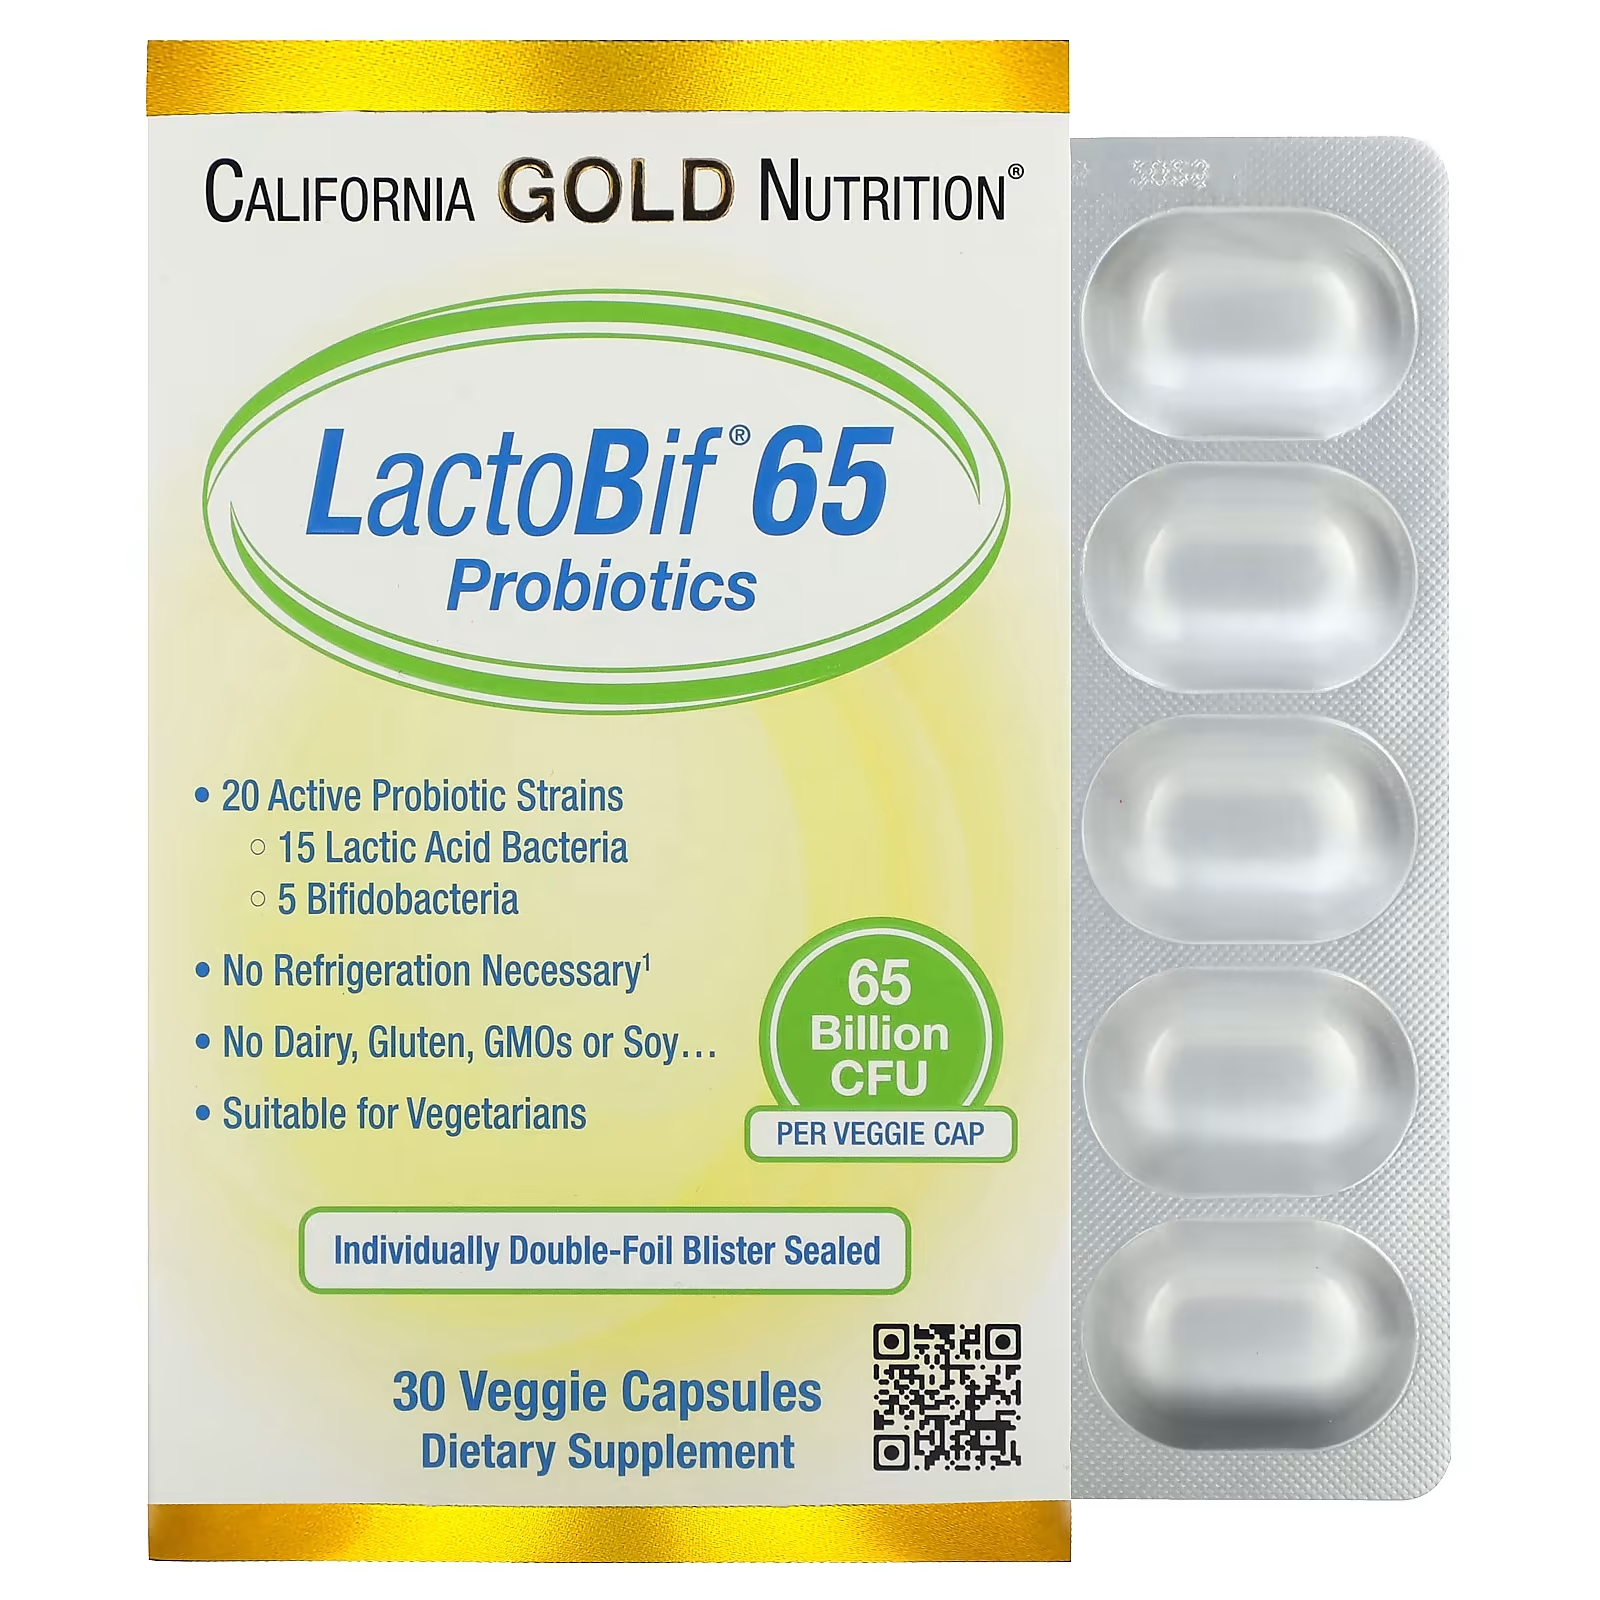 California Gold Nutrition LactoBif 65 Пробиотики 65 миллиардов КОЕ 30 растительных капсул пищевая добавка california gold nutrition пробиотики lactobif 60 растительных капсул